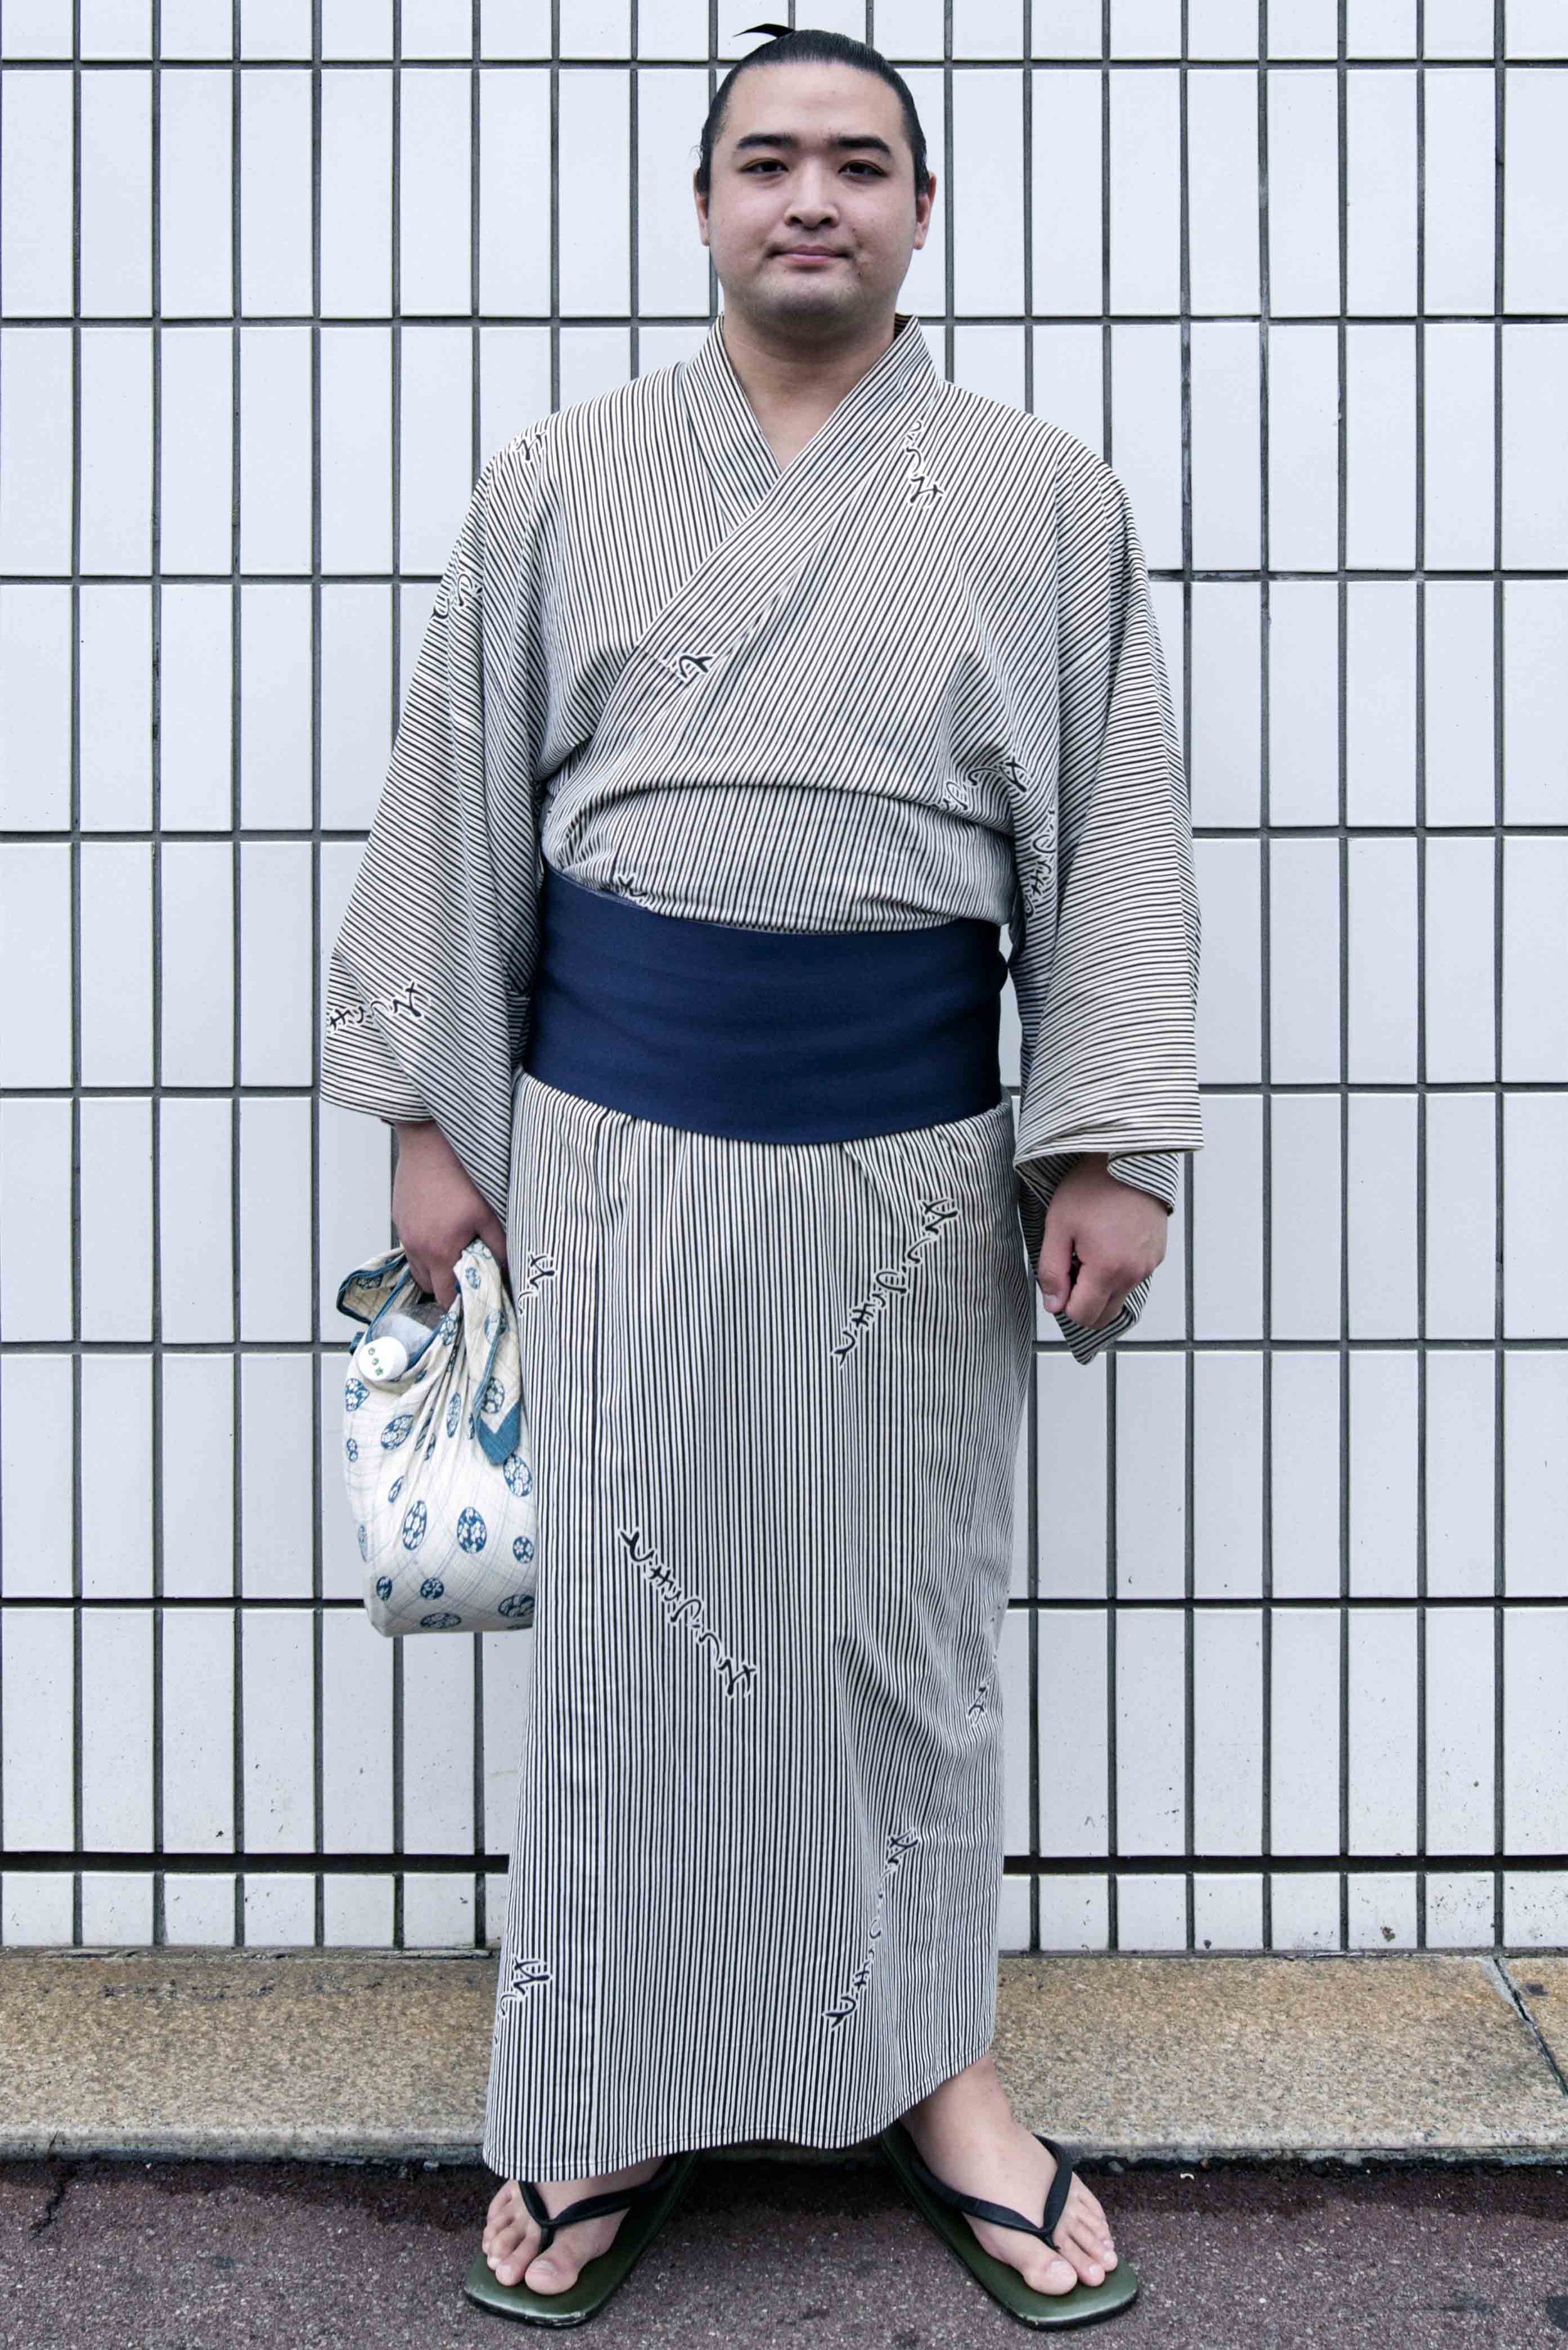 Sumo wrestler kimono.jpg